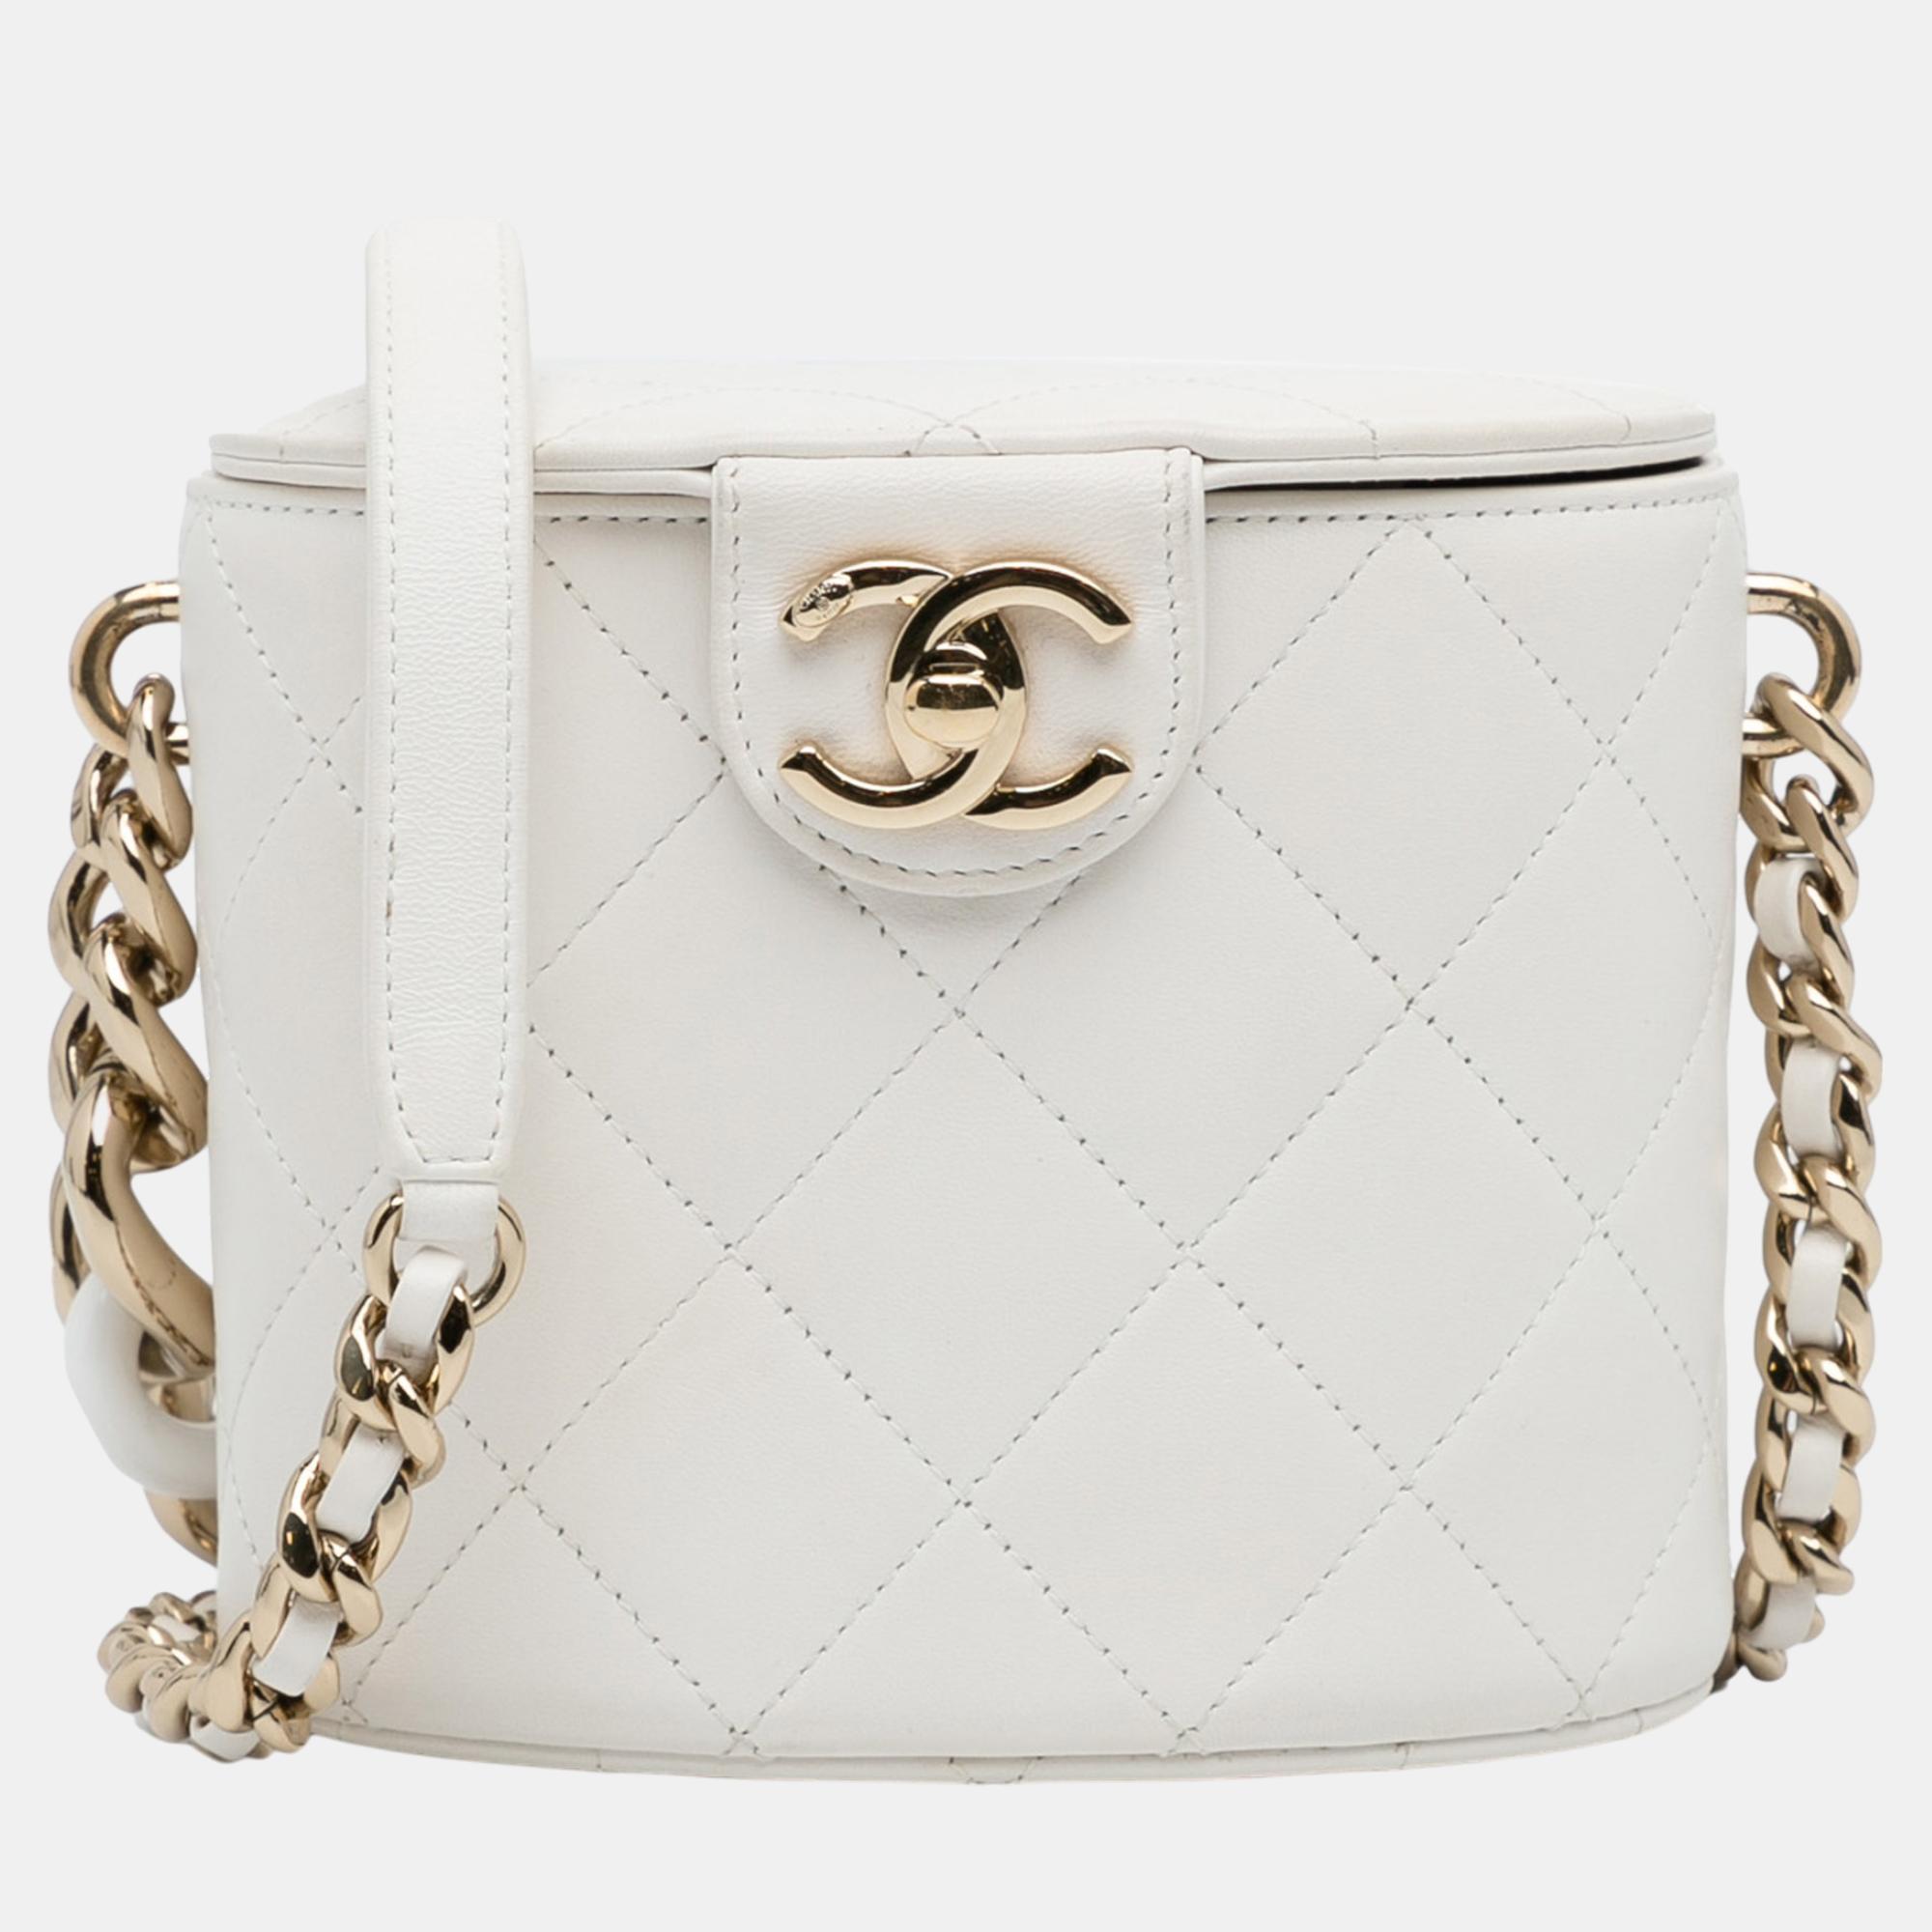 Chanel white elegant chain vanity case